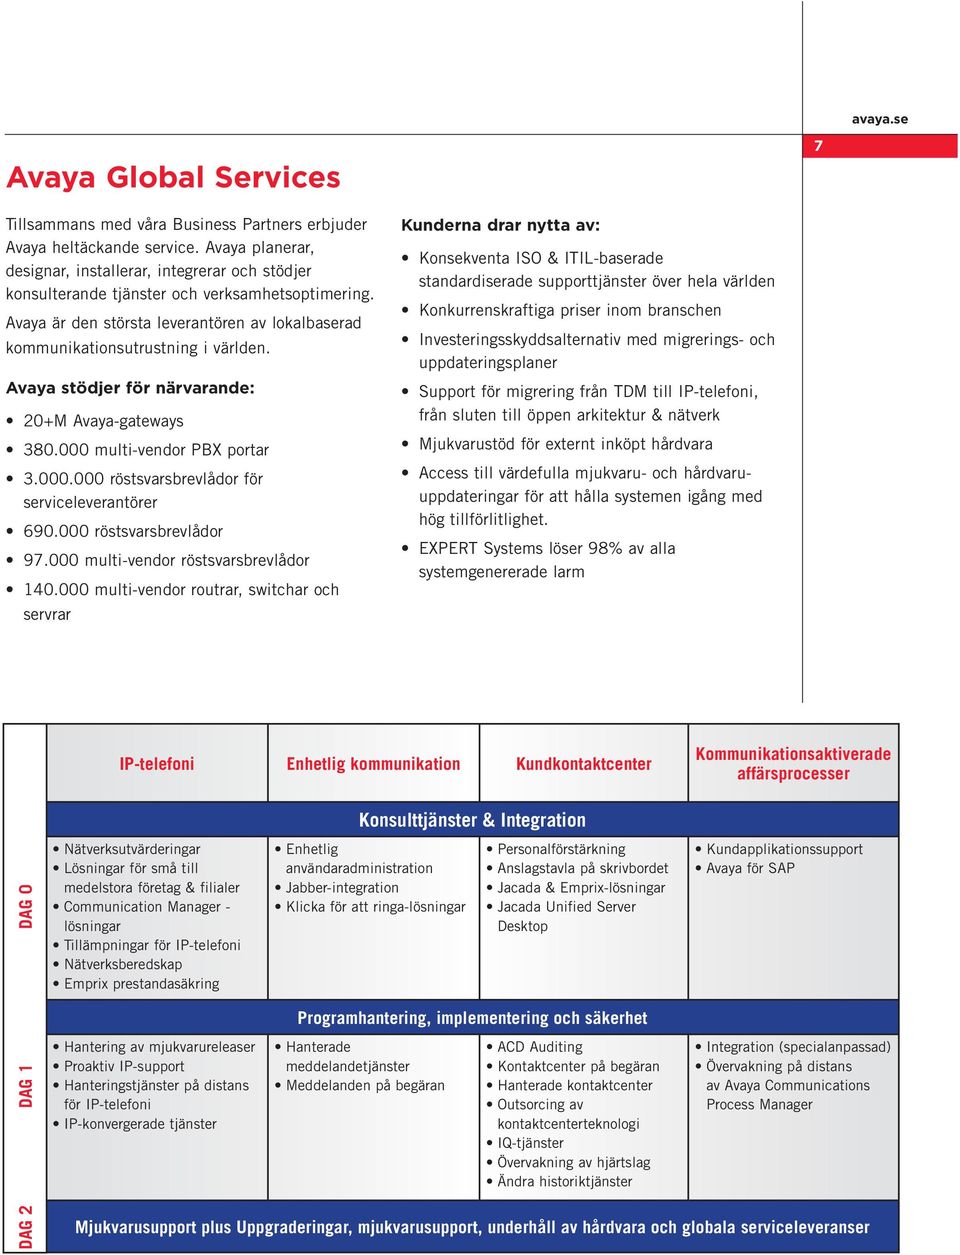 Avaya stödjer för närvarande: 20+M Avaya-gateways 380.000 multi-vendor PBX portar 3.000.000 röstsvarsbrevlådor för serviceleverantörer 690.000 röstsvarsbrevlådor 97.